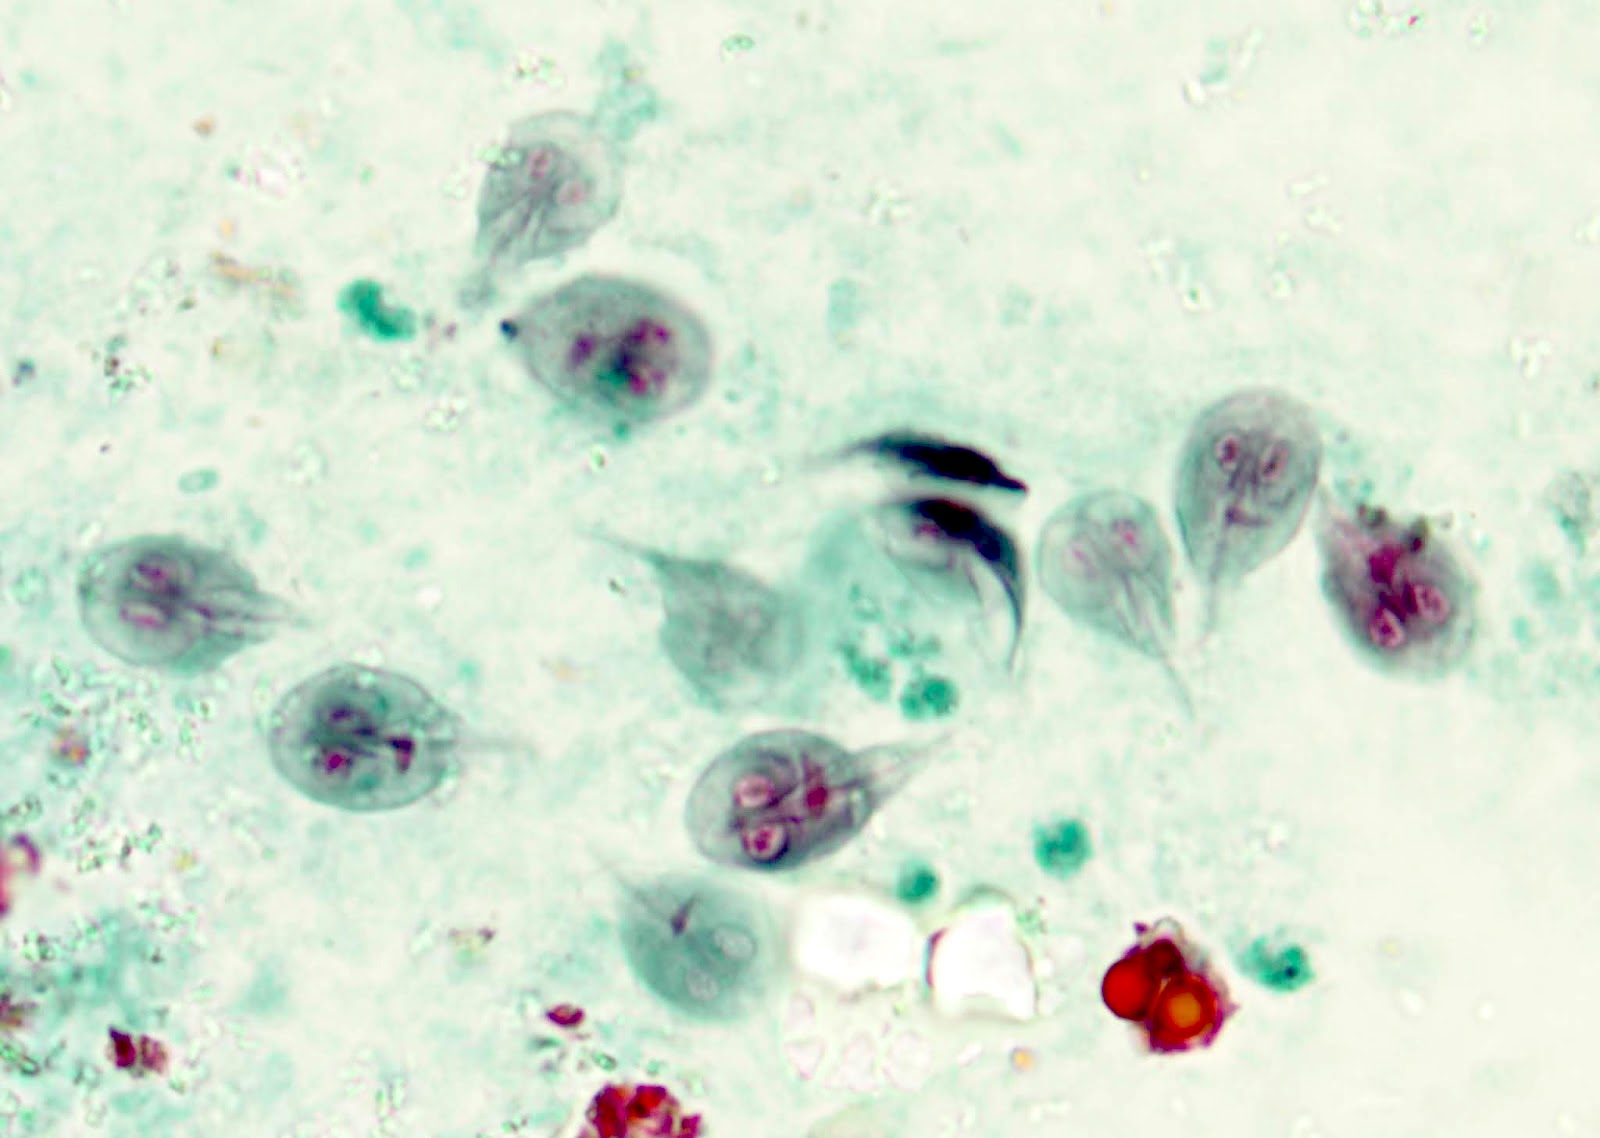 Giardia pathology outlines. Giardiasis duodenum pathology outlines